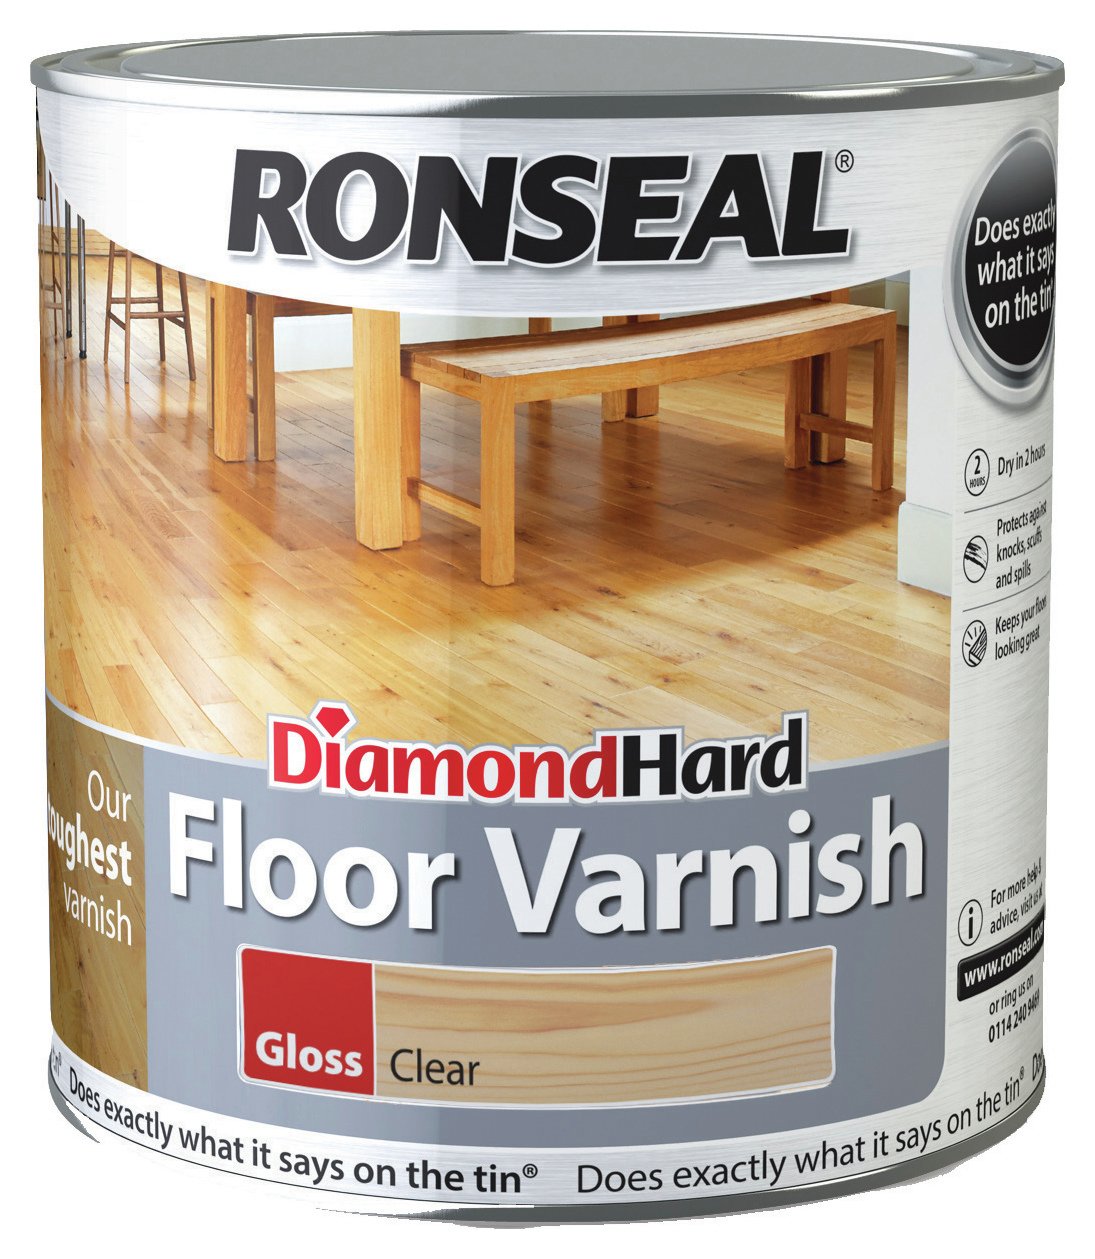 Ronseal Diamond Hard Floor Varnish 2.5L - Clear Satin.